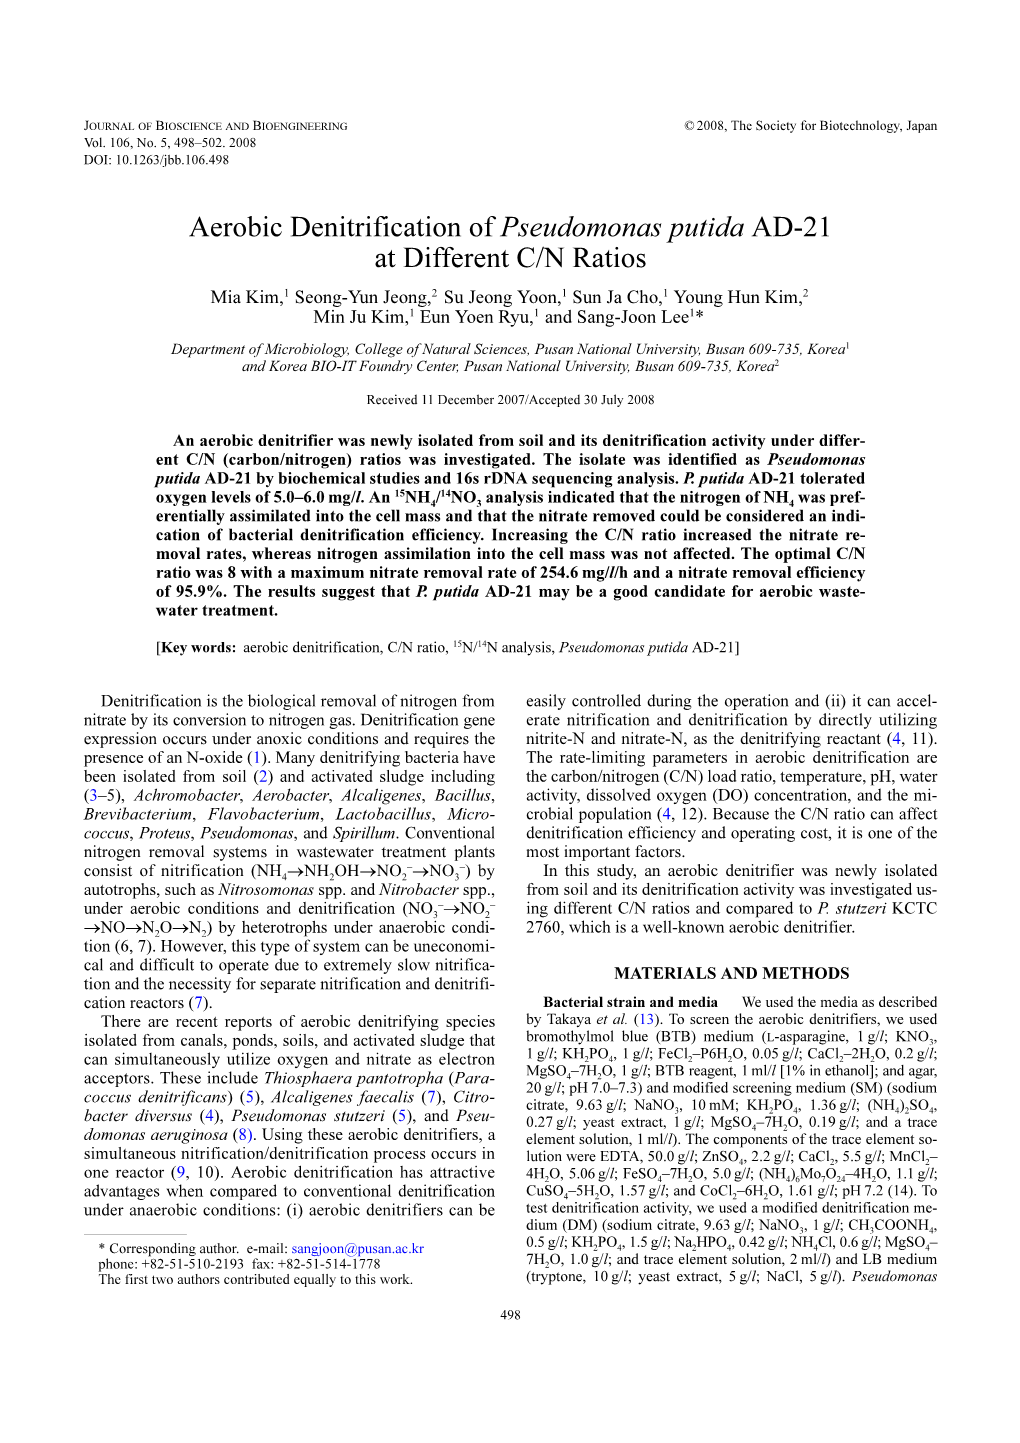 Aerobic Denitrification of Pseudomonas Putida AD-21 at Different C/N Ratios